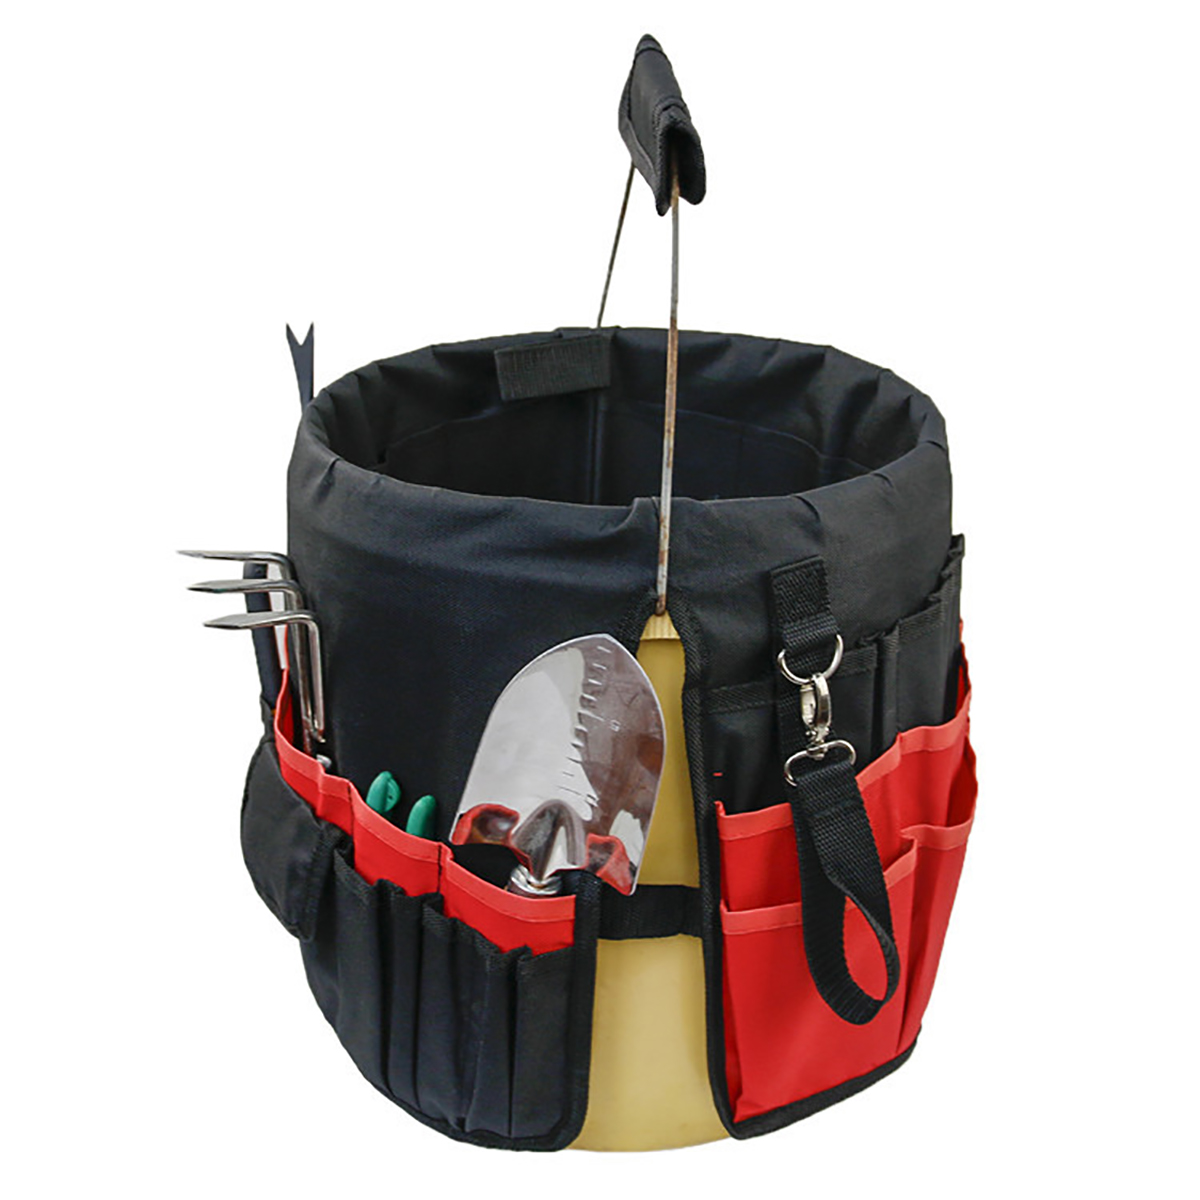 42-Storage-Pockets-Garden-Work-Tool-Bag-For-5-Gallon-Bucket-Organizer-Holder-1680249-11